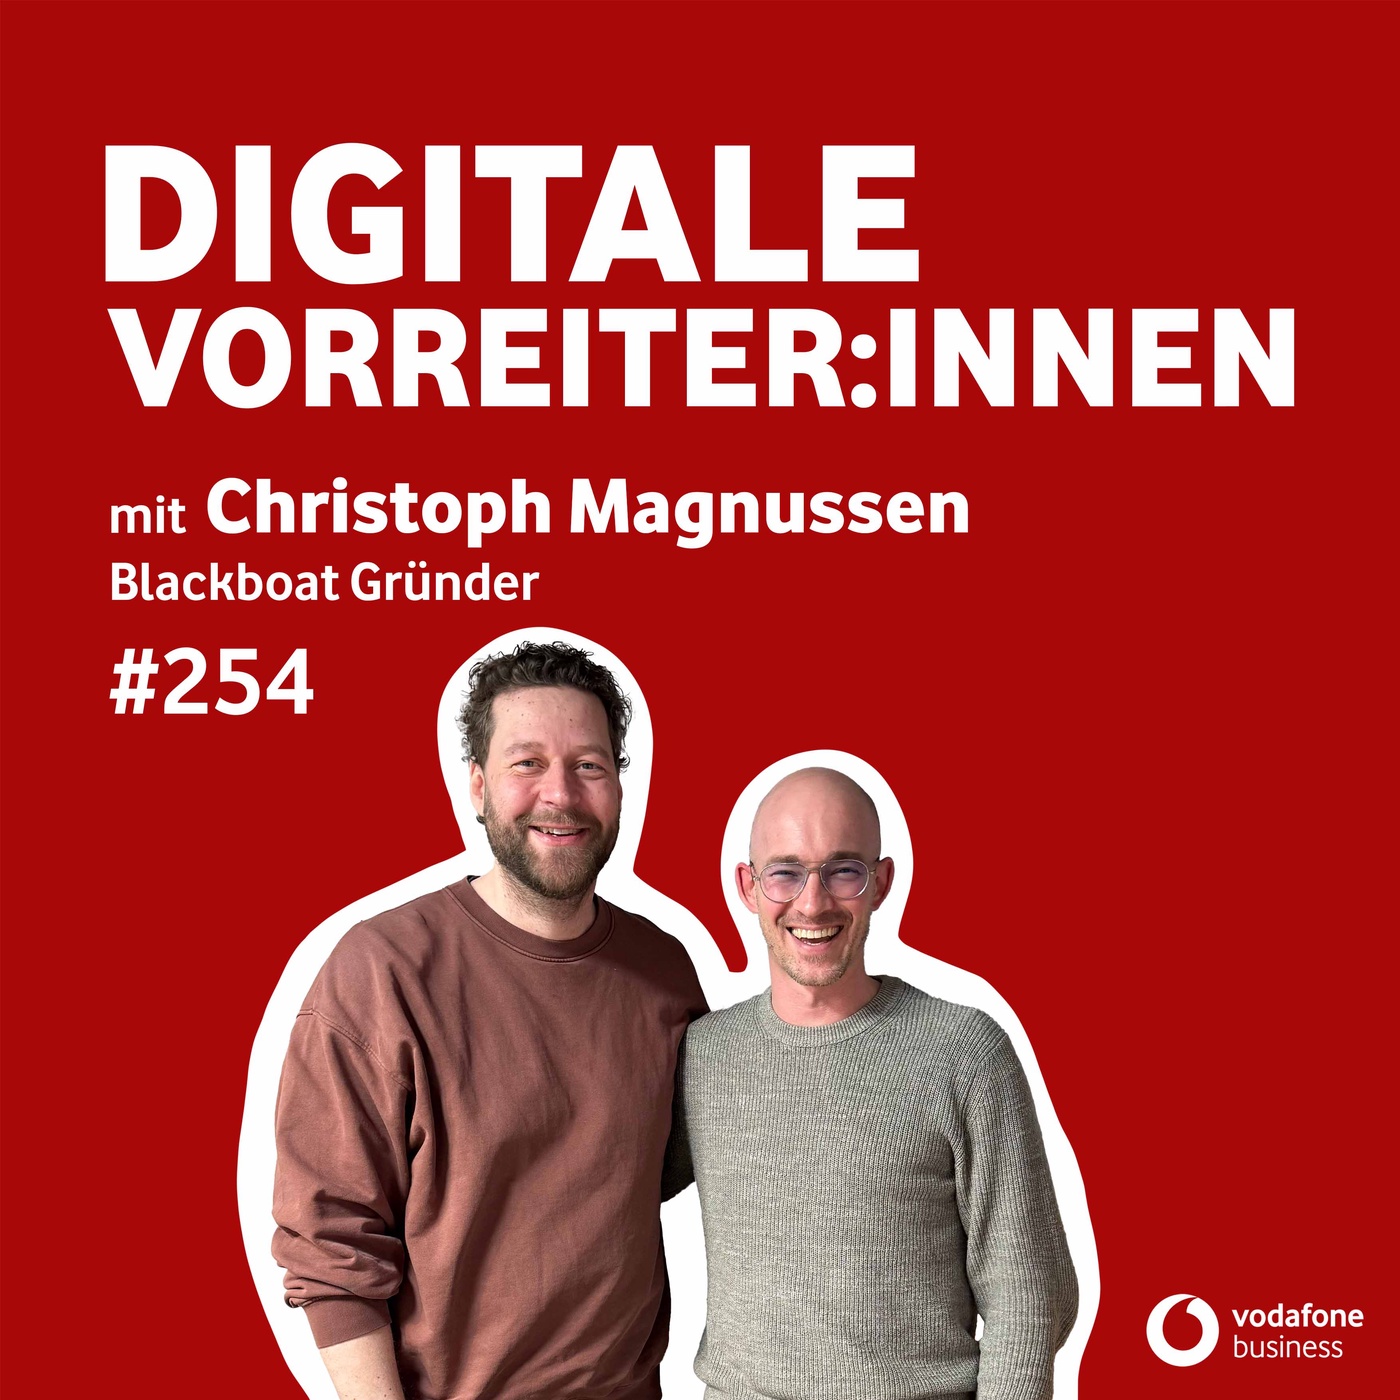 Technologie als Coworker betrachten „On the Way to New Work” – mit Christoph Magnussen